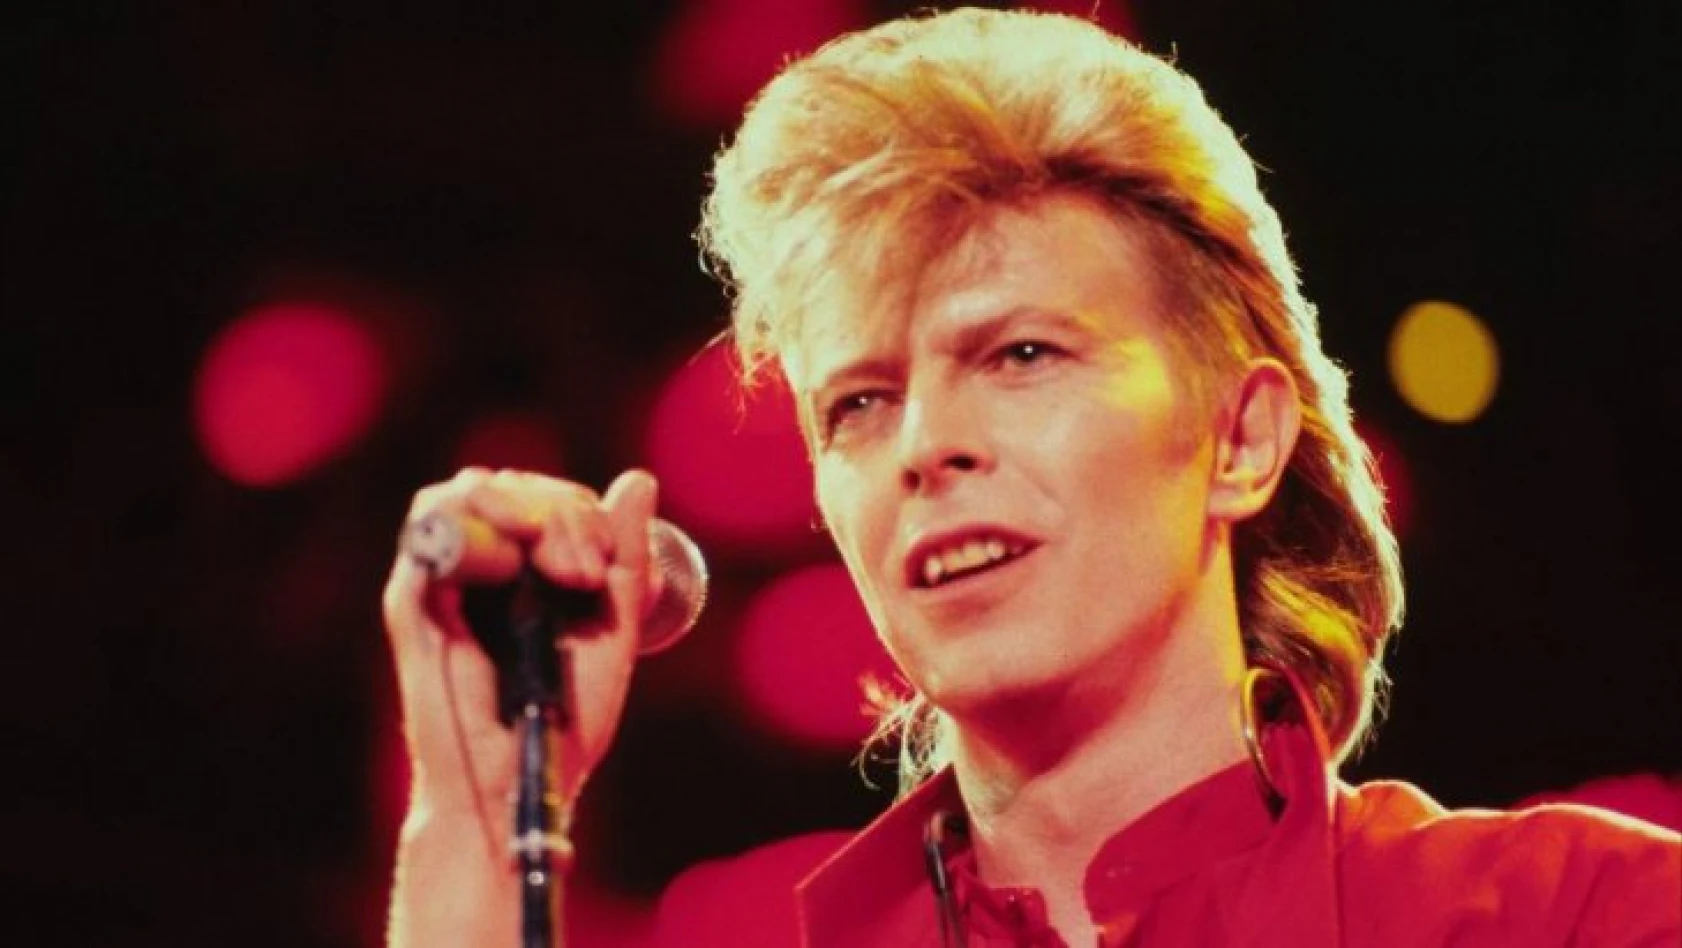 Müzik ikonu David Bowie, son 50 yılın en etkili İngiliz sanatçısı seçildi